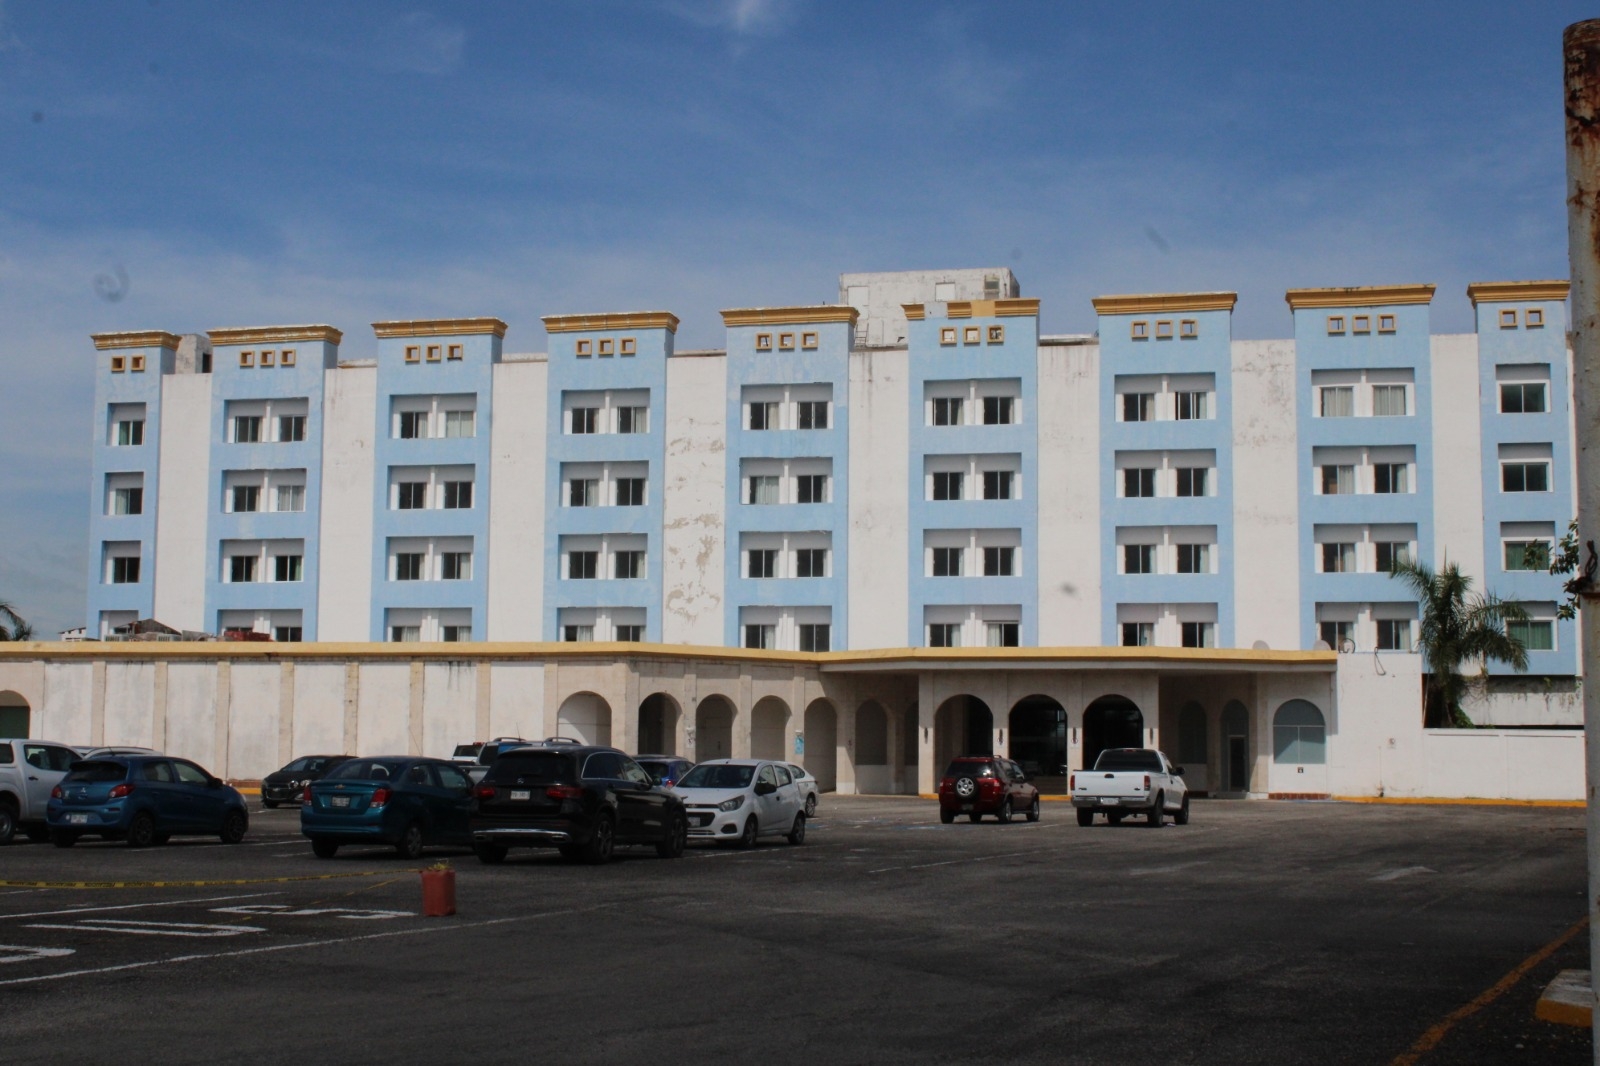 Hoteleros de Campeche reportan 70% de ocupación durante las primeras semanas de diciembre